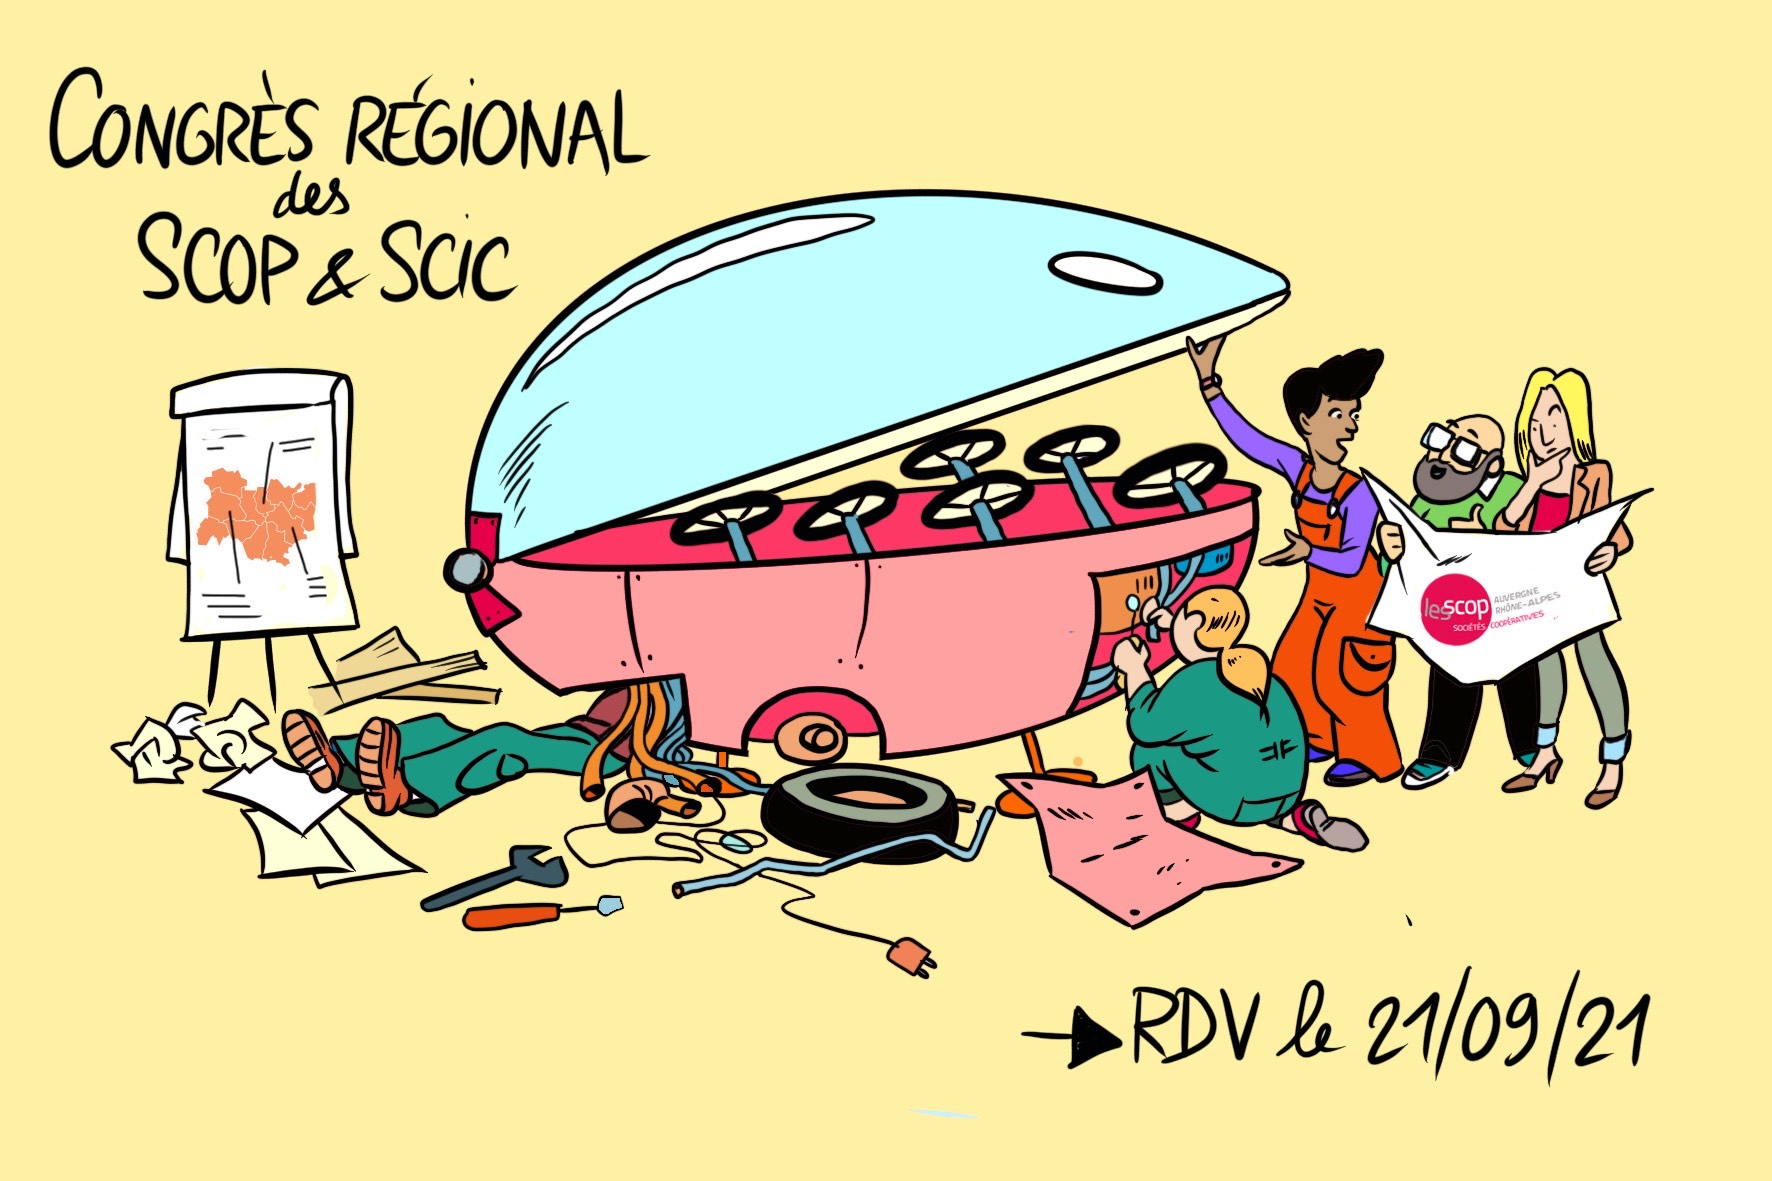 congres regional des scop et scic